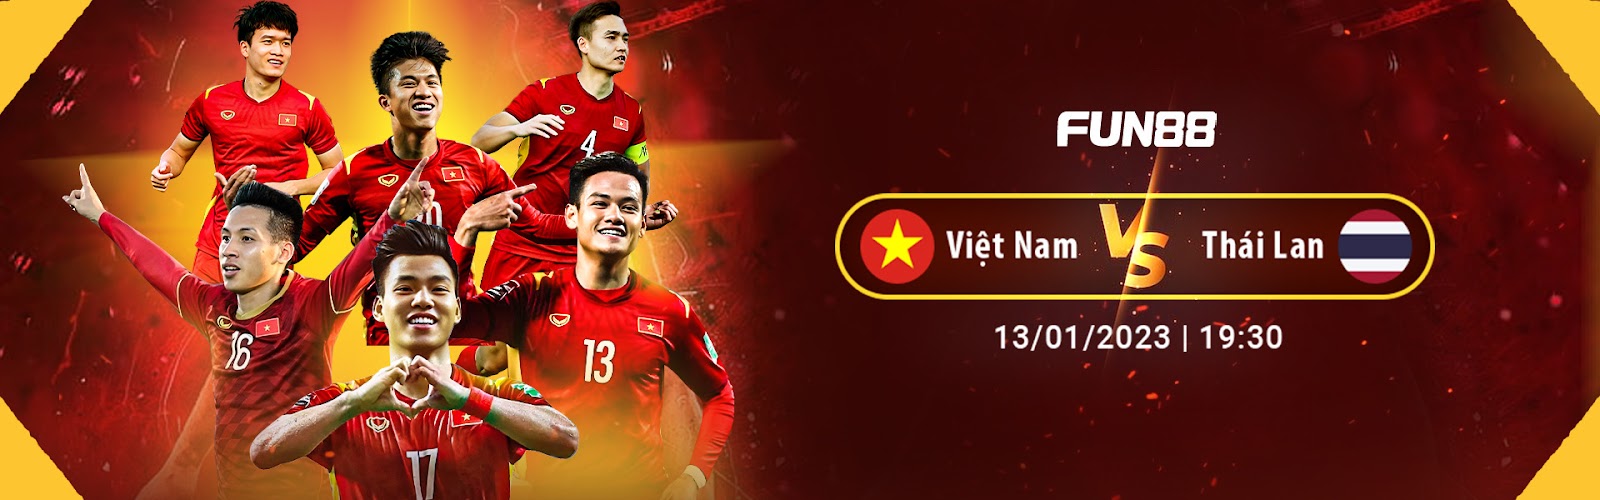 Việt Nam vs Thái Lan tại chung kết AFF Cup lượt đi